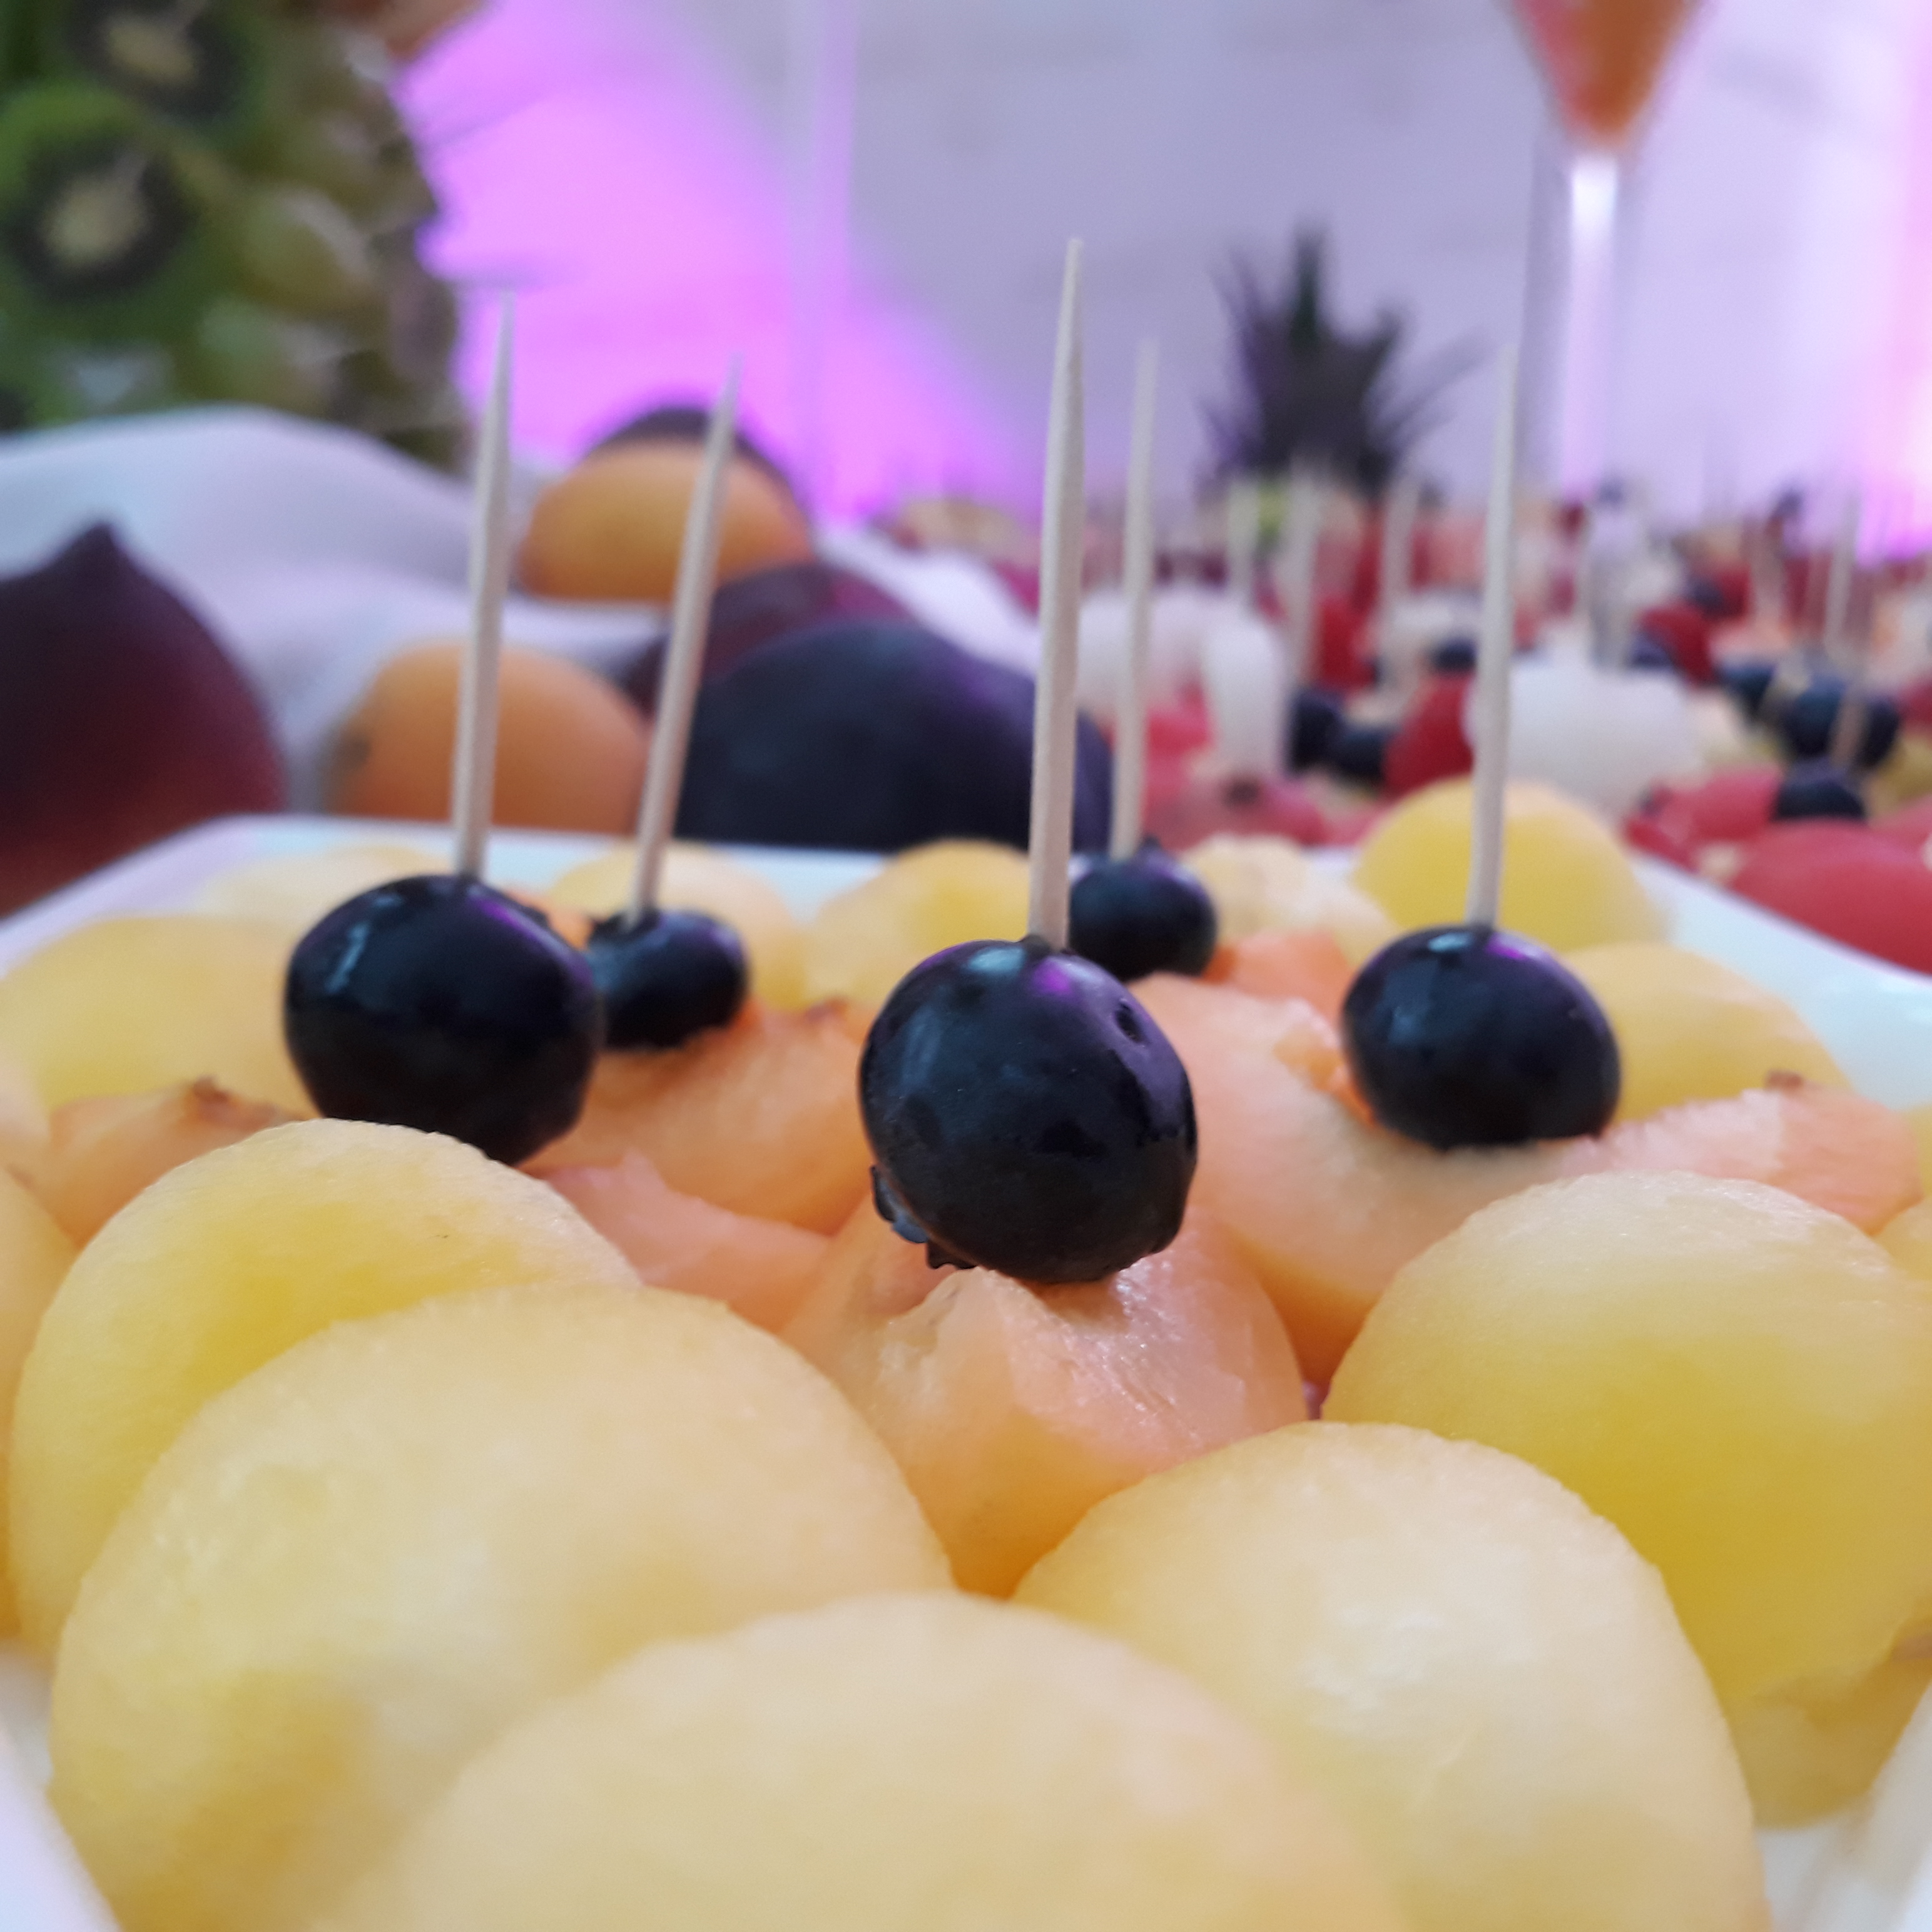 stół z owocami Koło, fruit carving, stół owocowy Konin, fruit bar, stół owocowy Turek, dekoracje owocowe, fruit bar,